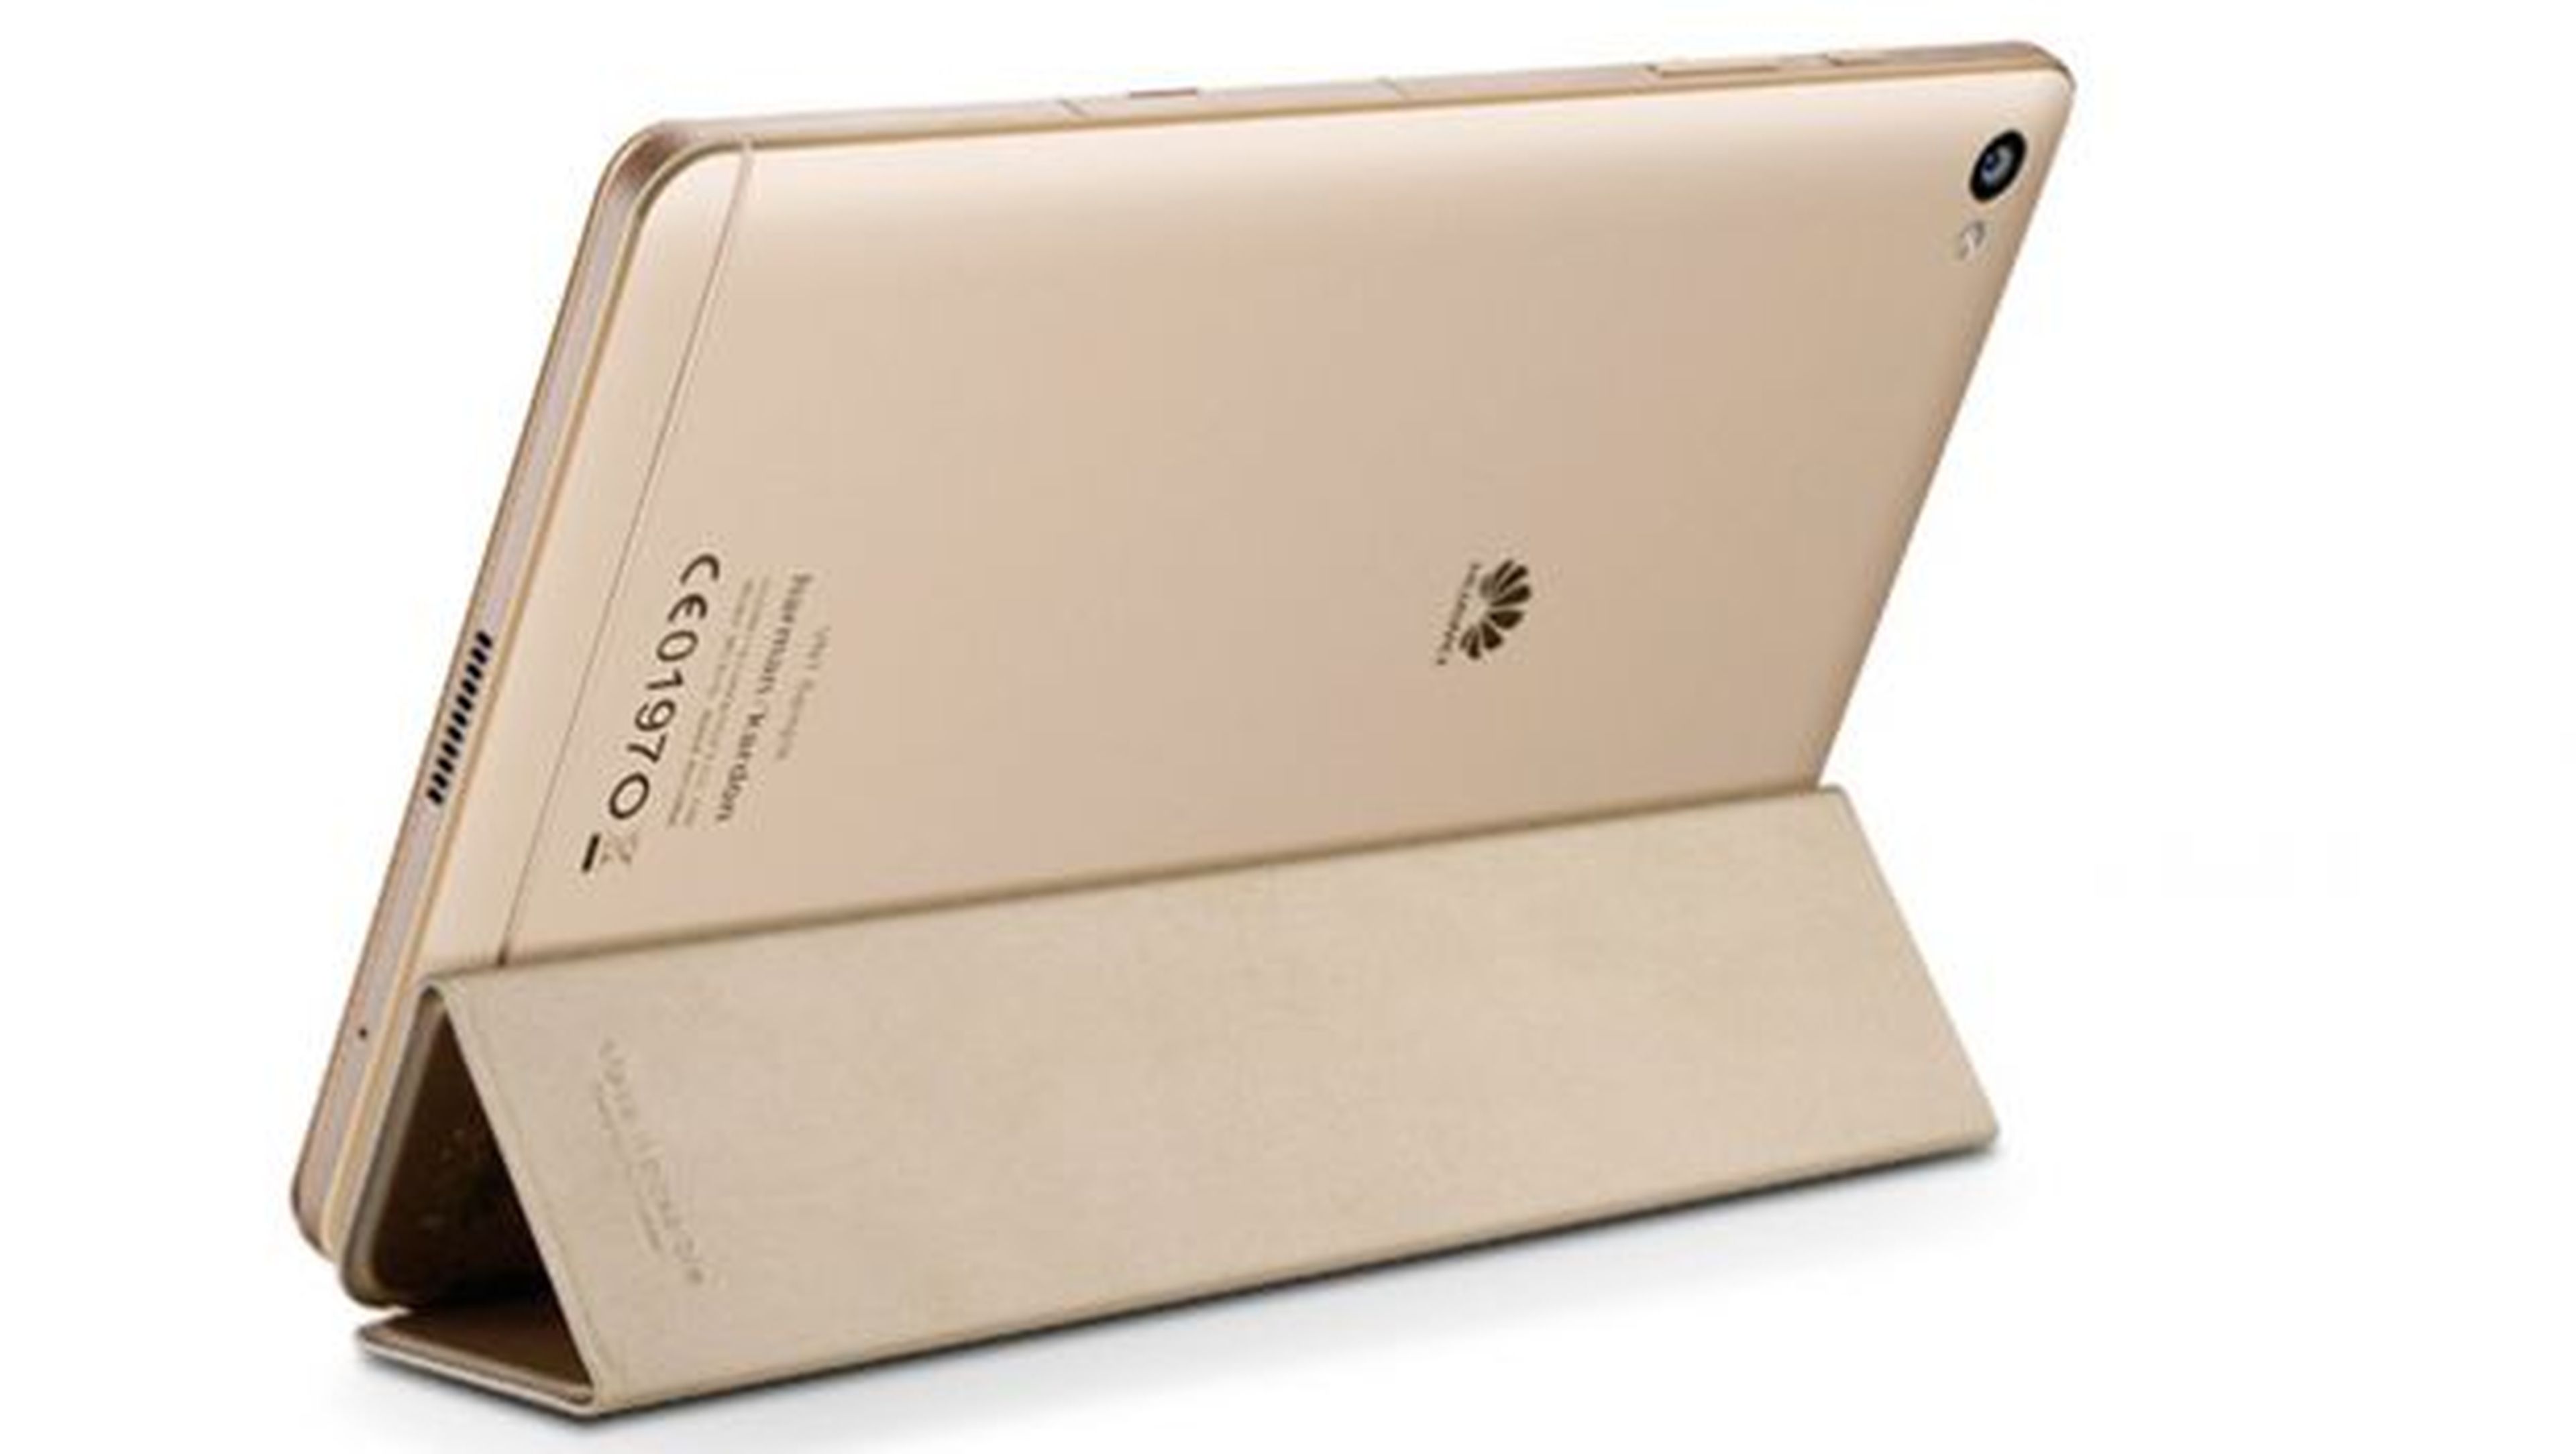 El Smart Cover permite colocar la tablet en posición vertical